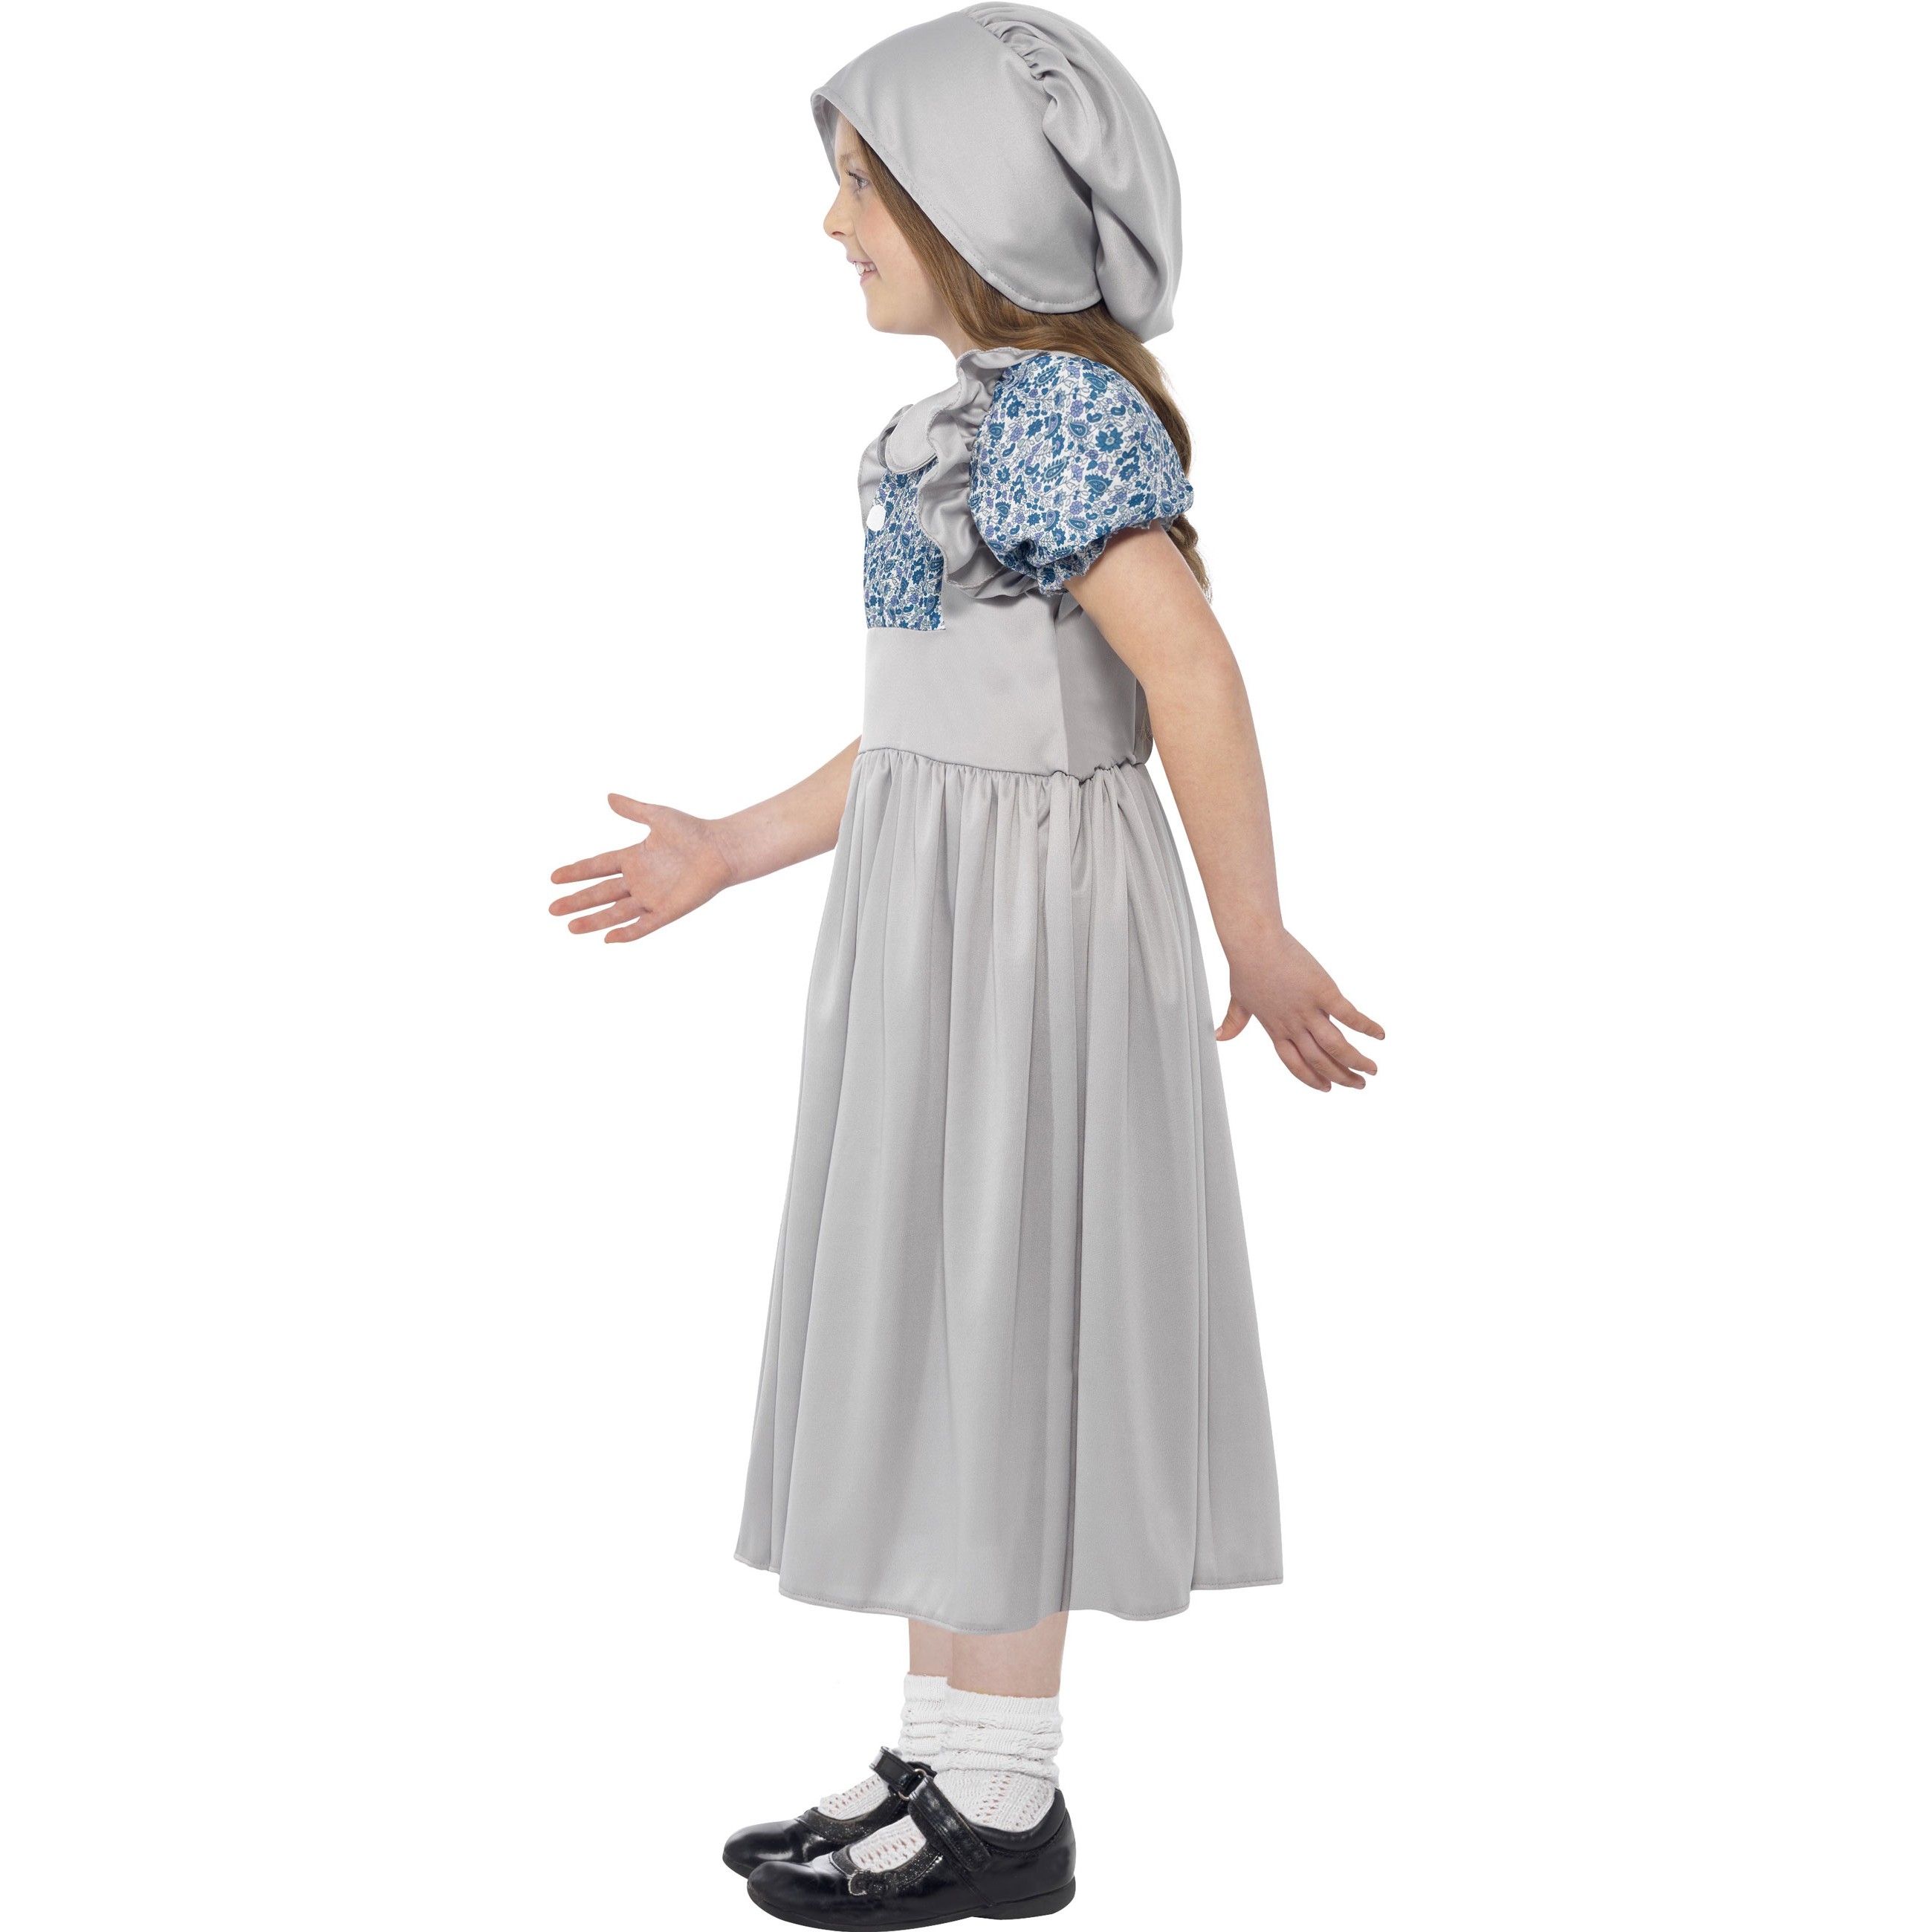 Viktorianisches Kleid Kinderkostüm Schulmädchen Historisches Kostüm Mittelalter 